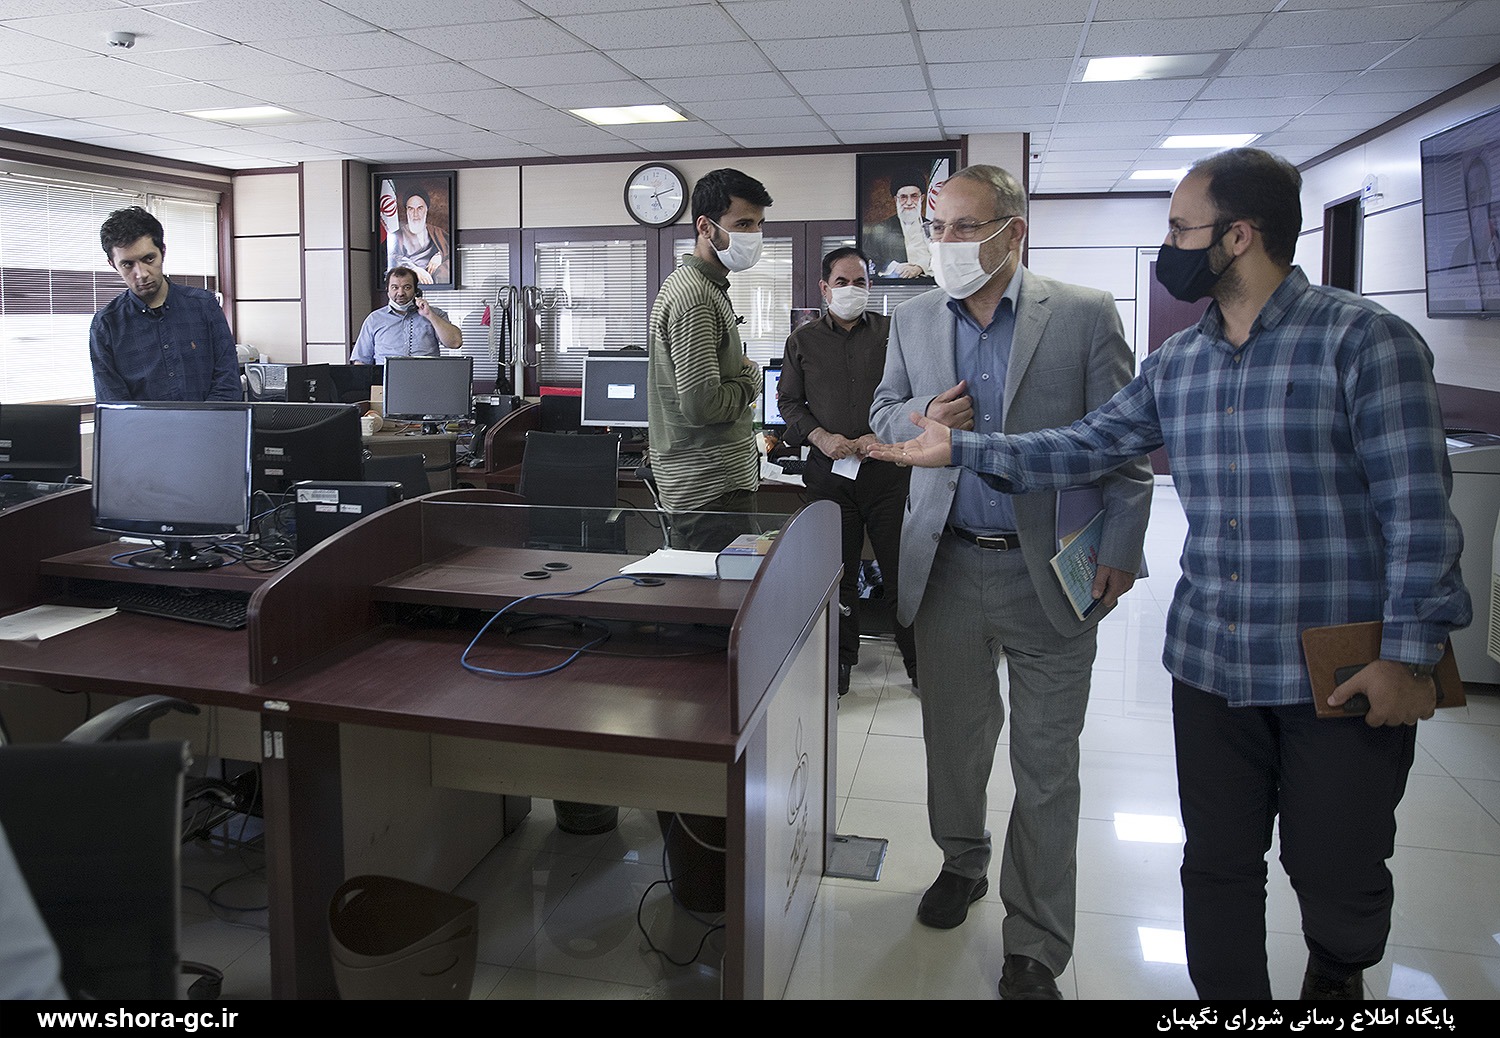 دکتر صادقی مقدم از خبرگزاری فارس بازدید کرد+عکس